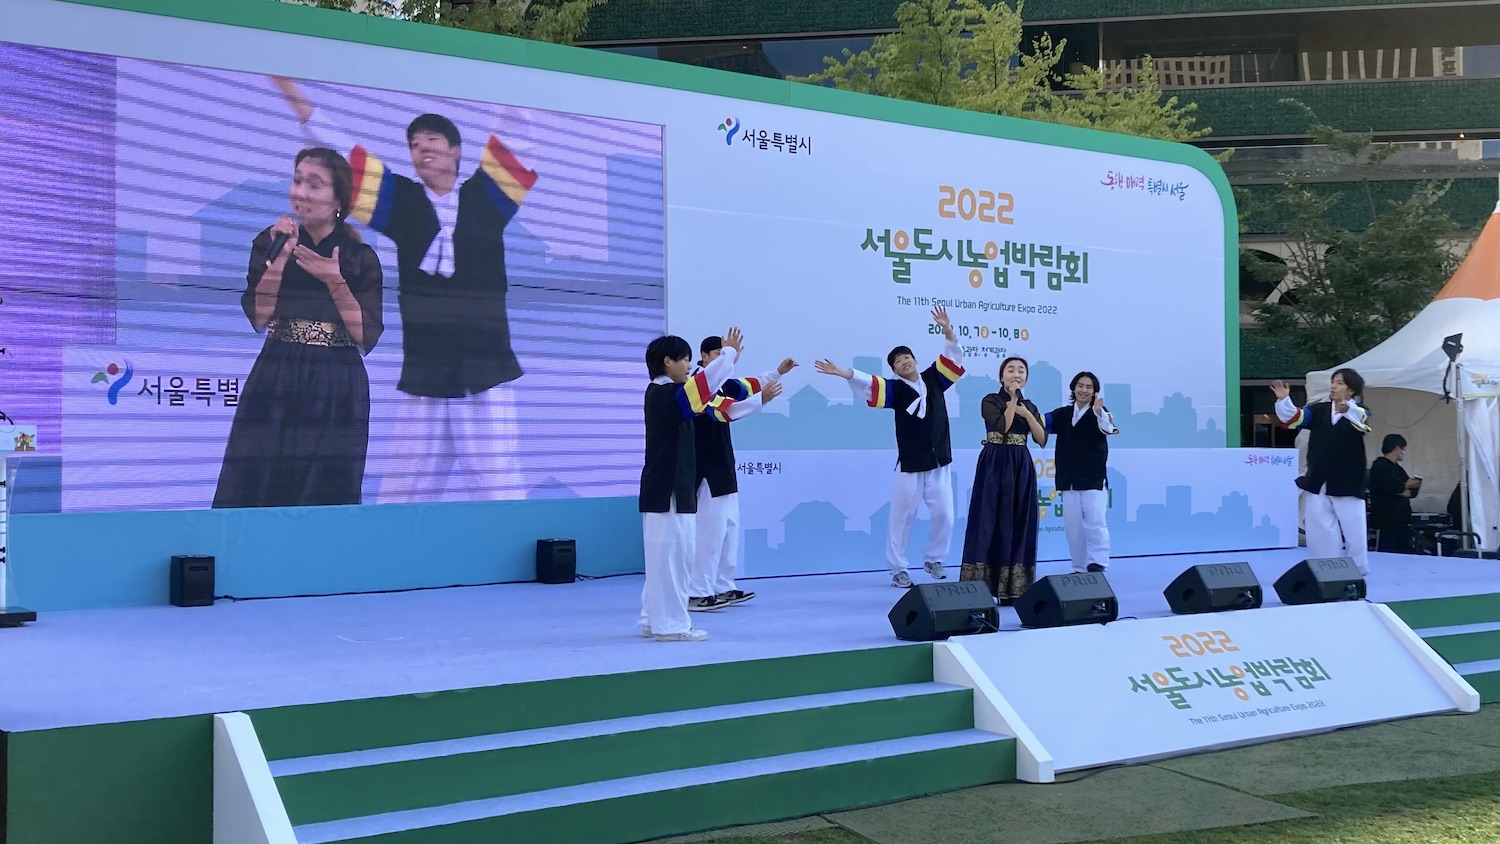 국악인 김지현과 국악 비보이 크루 에스플라바의 식전 공연